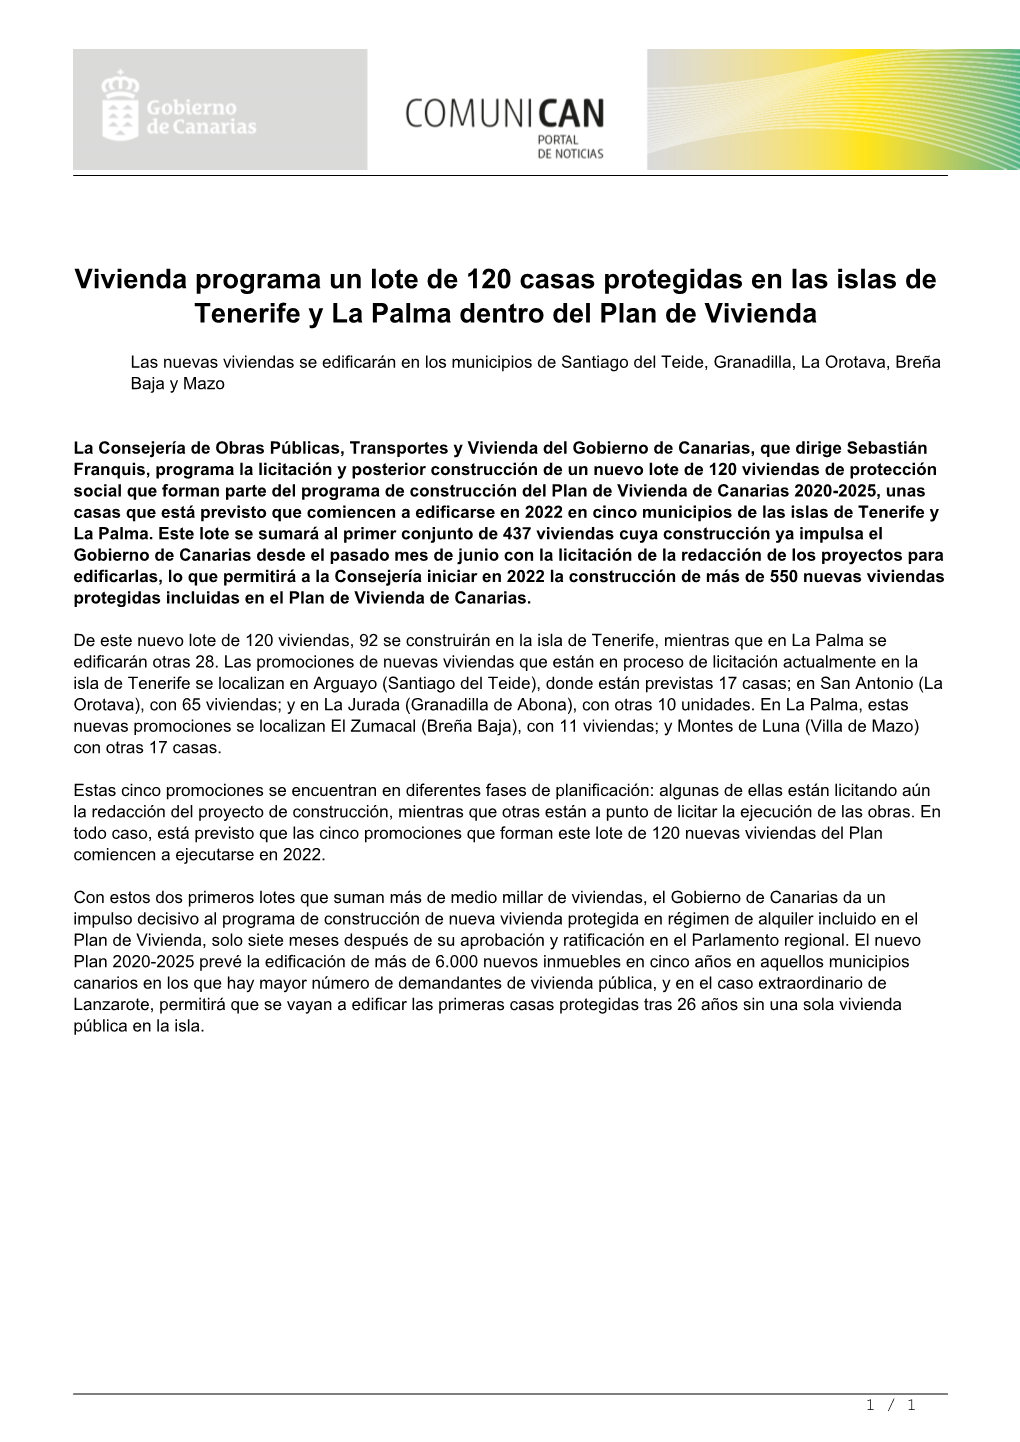 Vivienda Programa Un Lote De 120 Casas Protegidas En Las Islas De Tenerife Y La Palma Dentro Del Plan De Vivienda